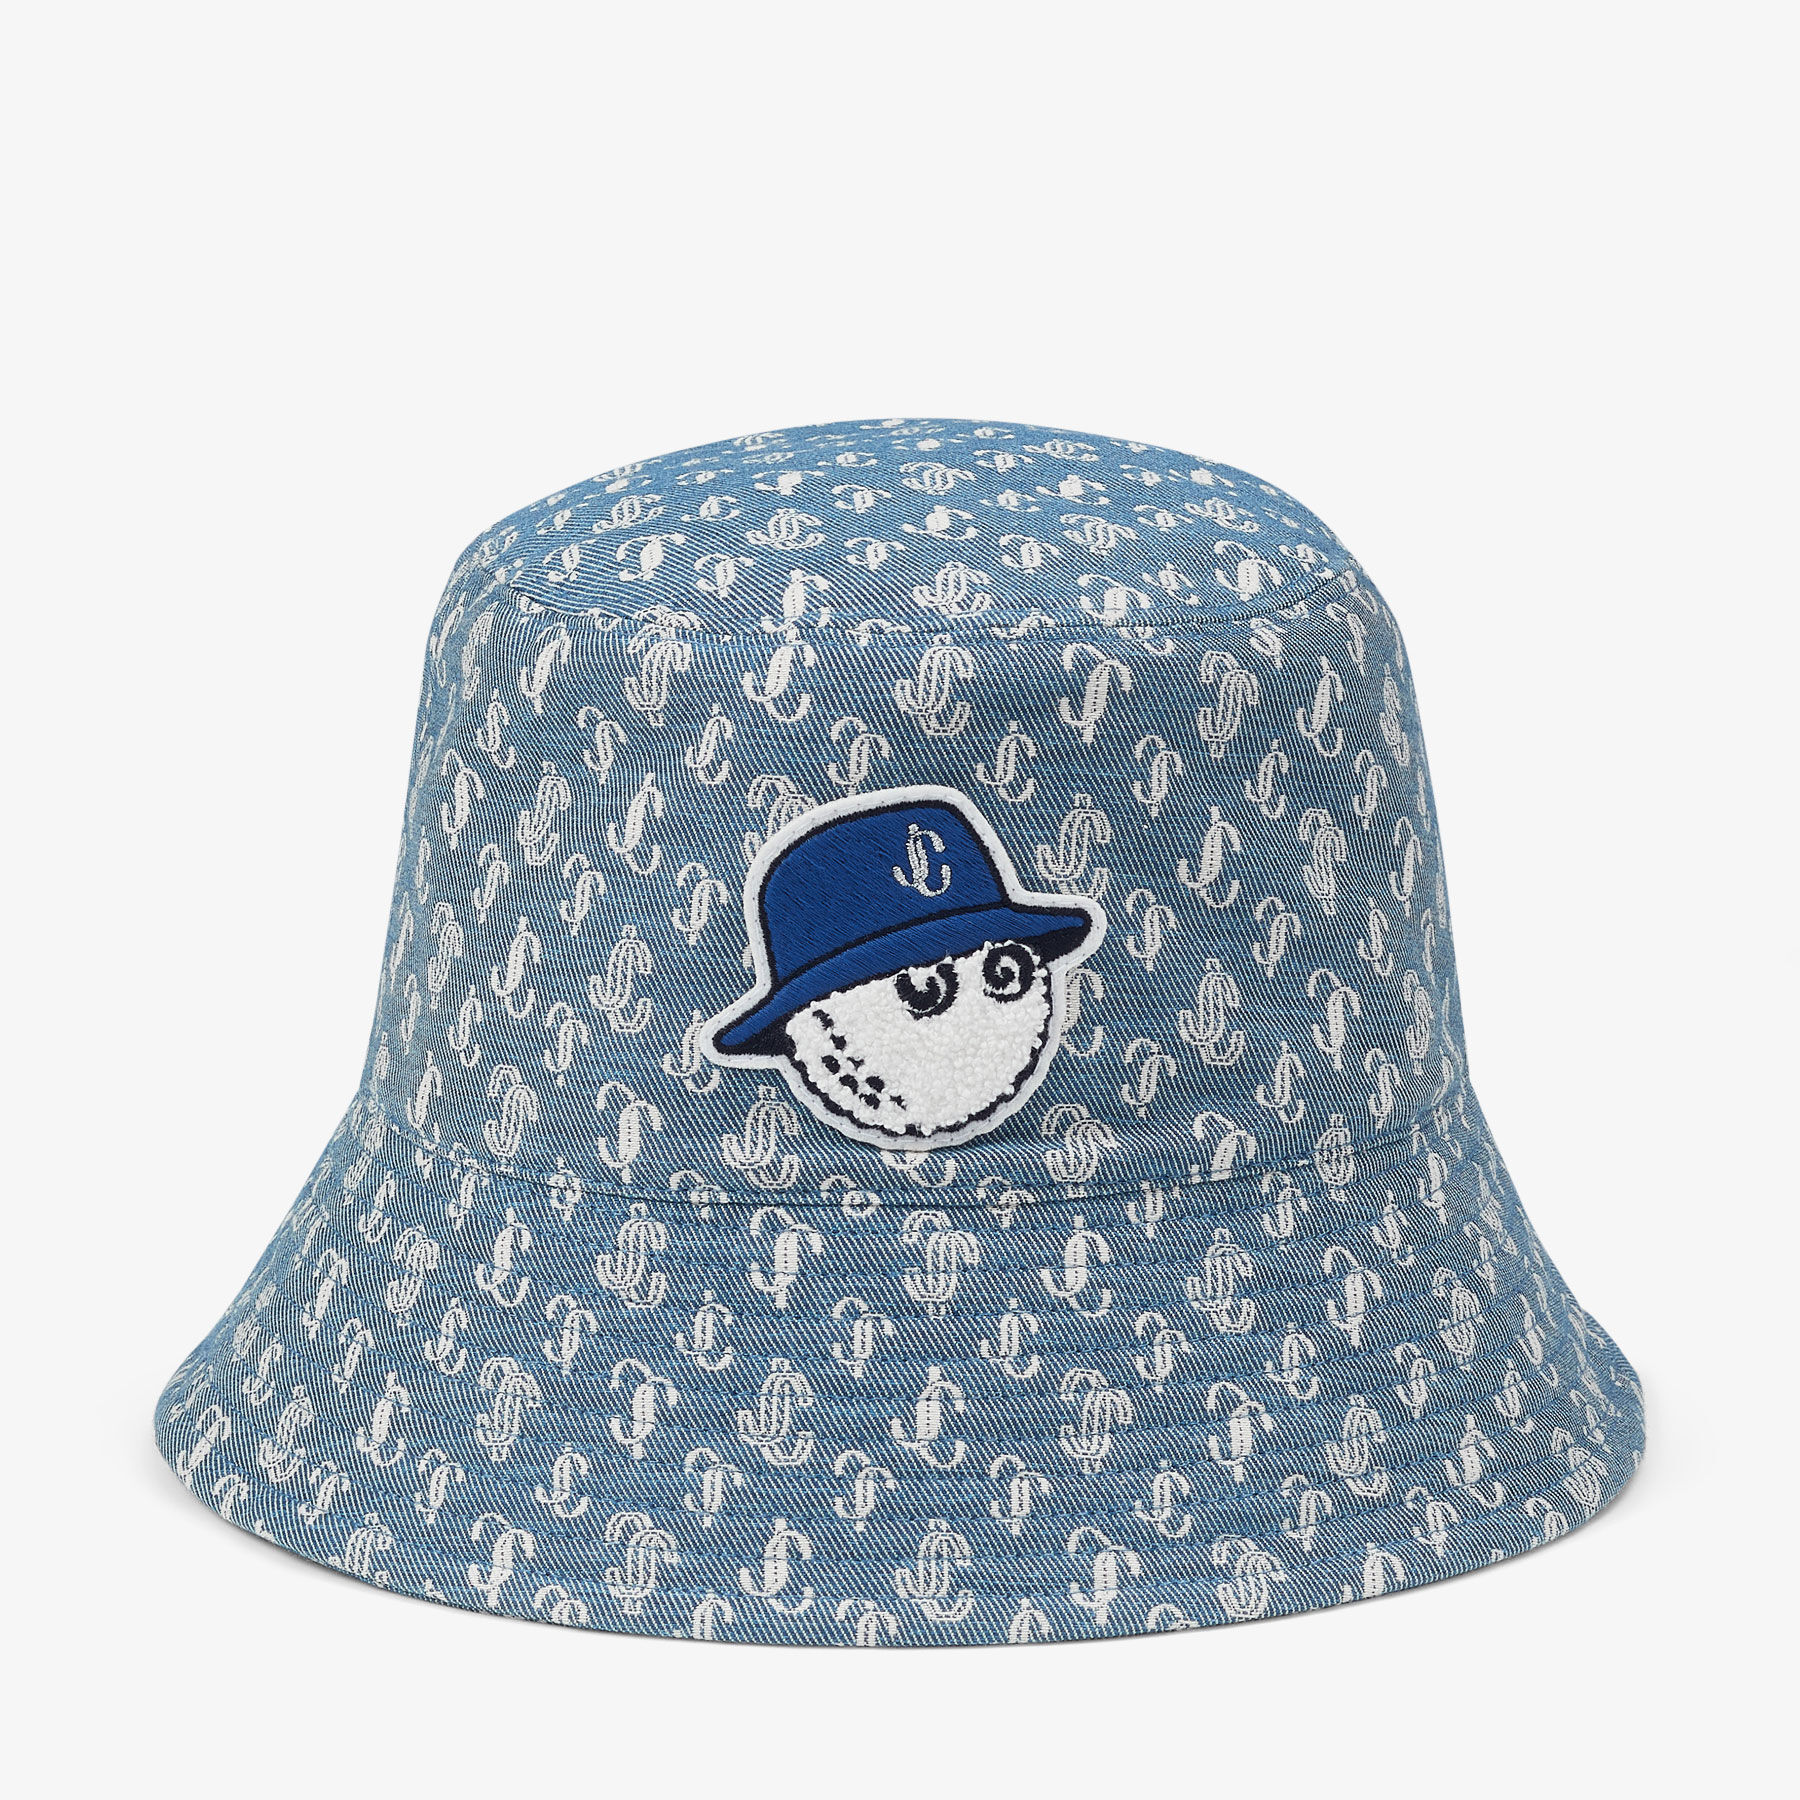 Jimmy Choo / Malbon Bucket Hat In Blue